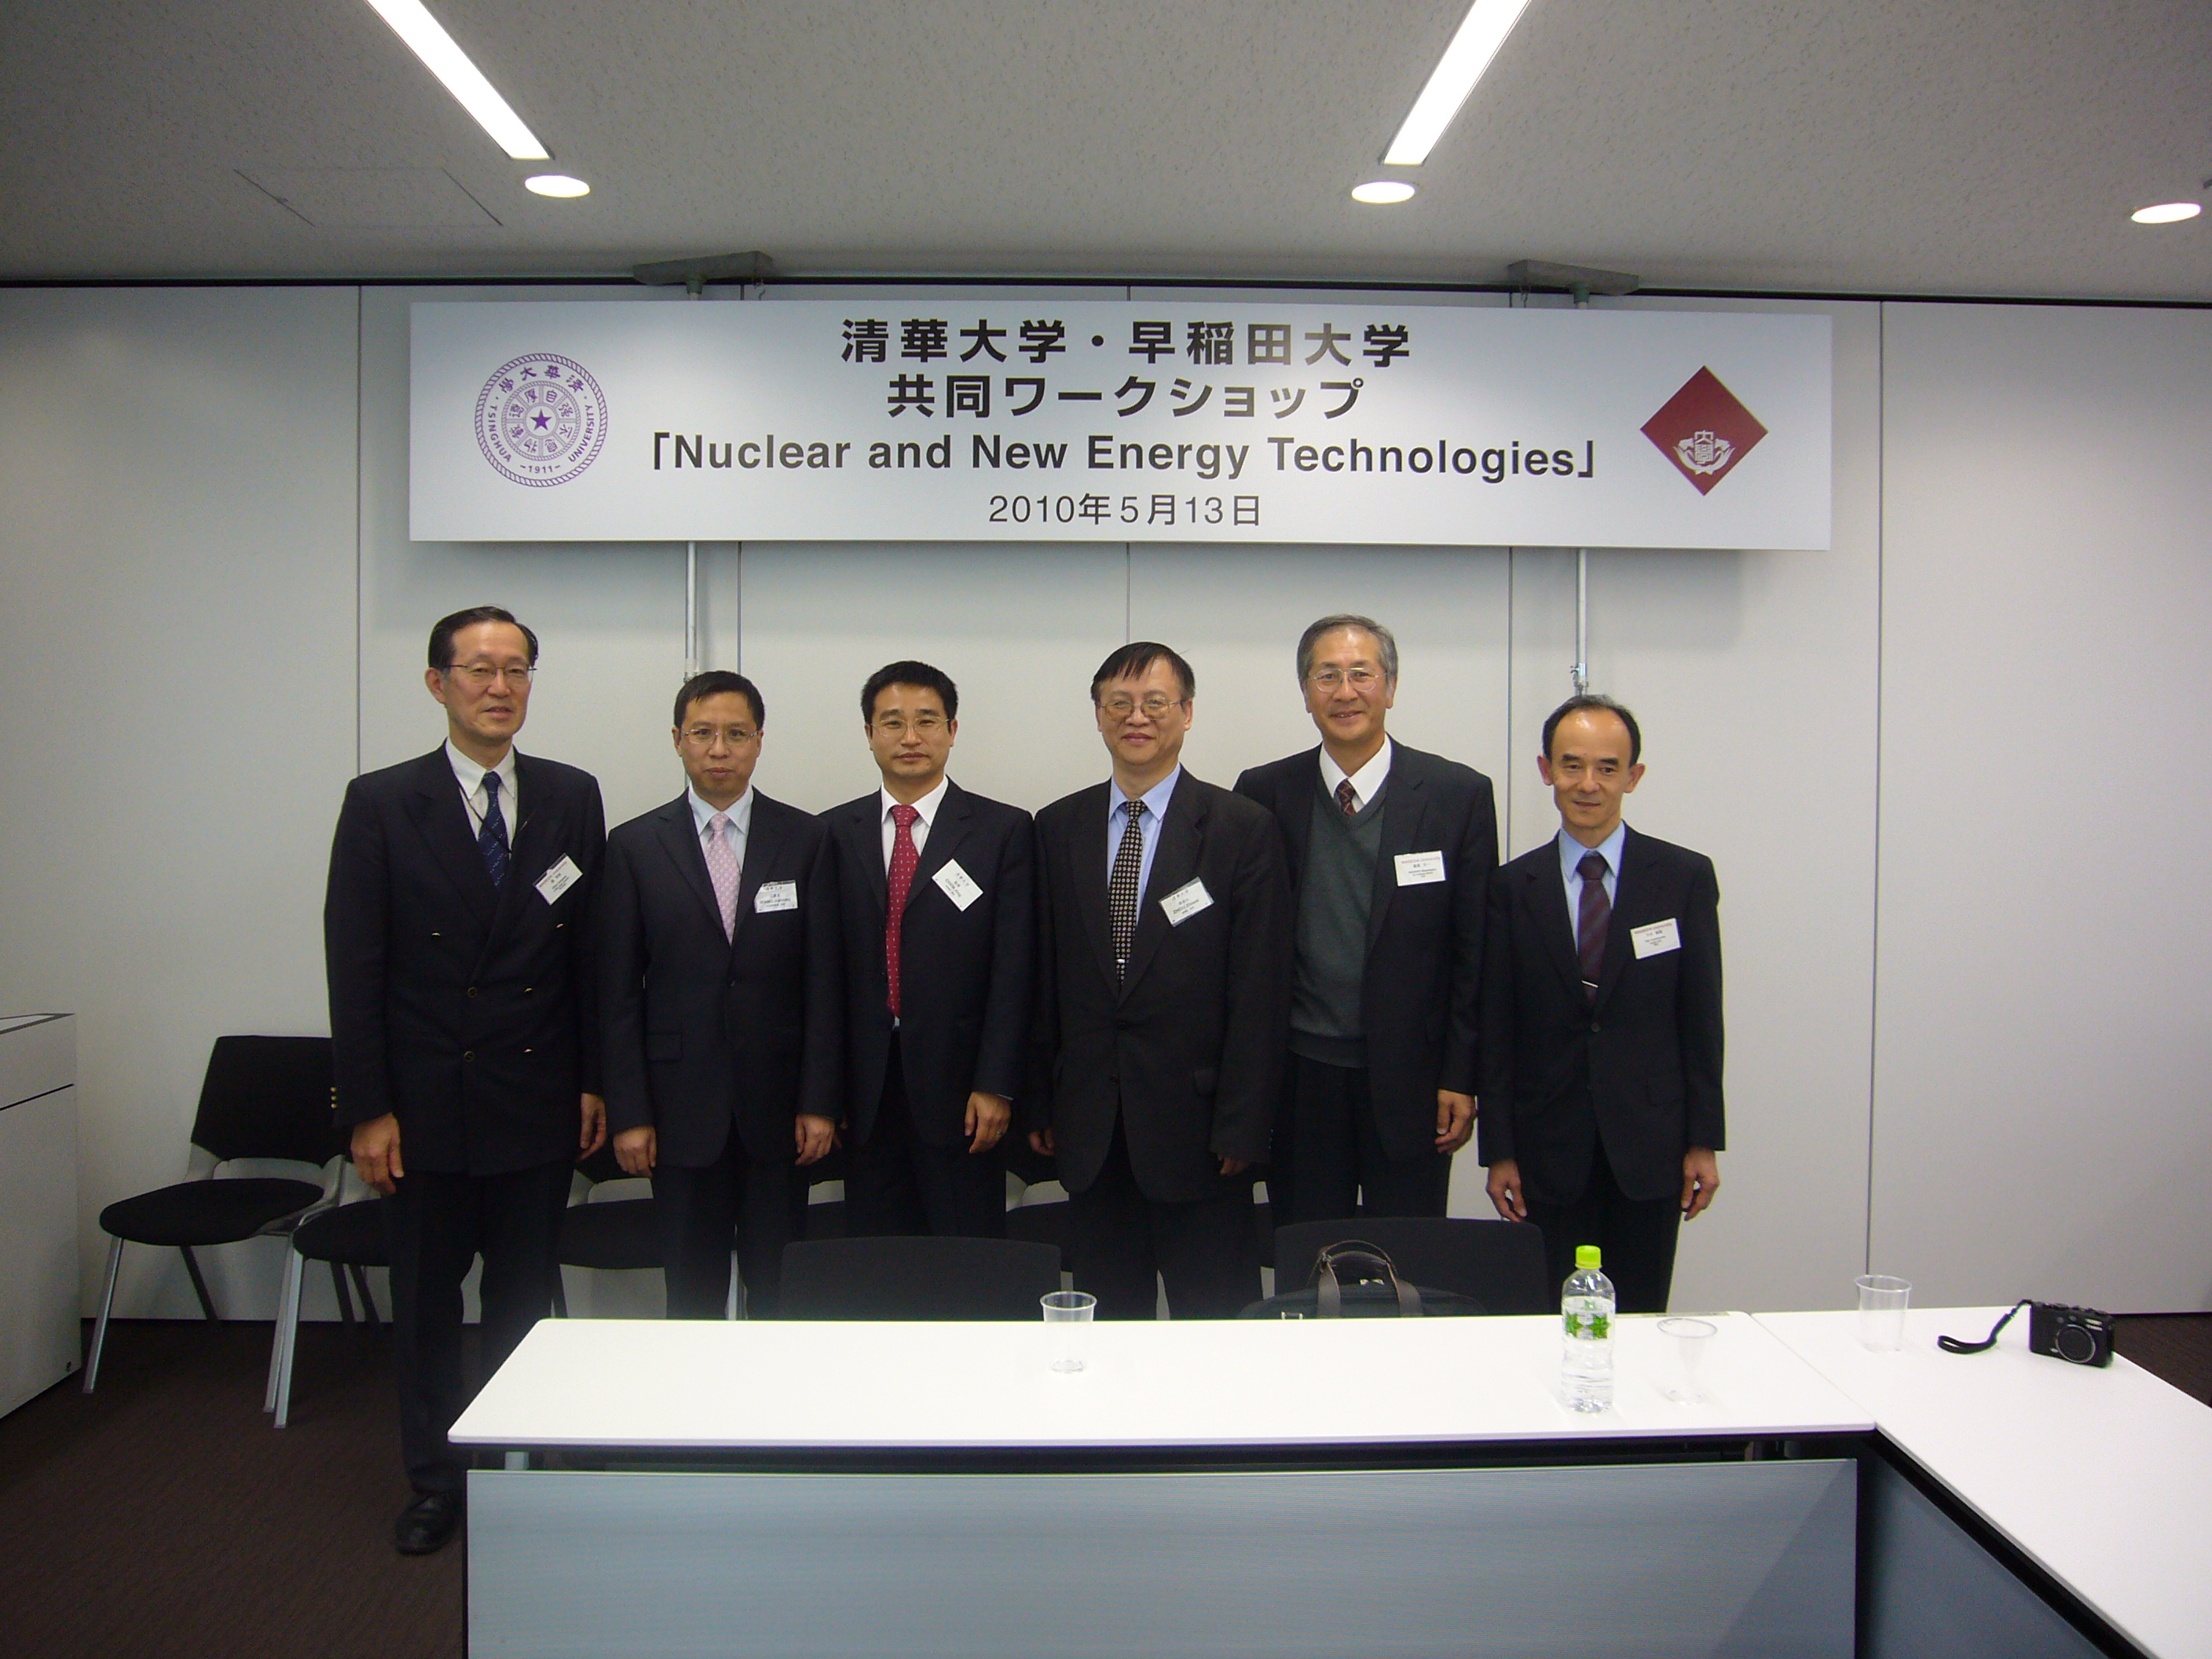 2010/5/13に清華大学デーを開催し、中国の原子力事情の講演と早稲田大学の共同原子力専攻と原子力研究について紹介し意見交換を行いました。